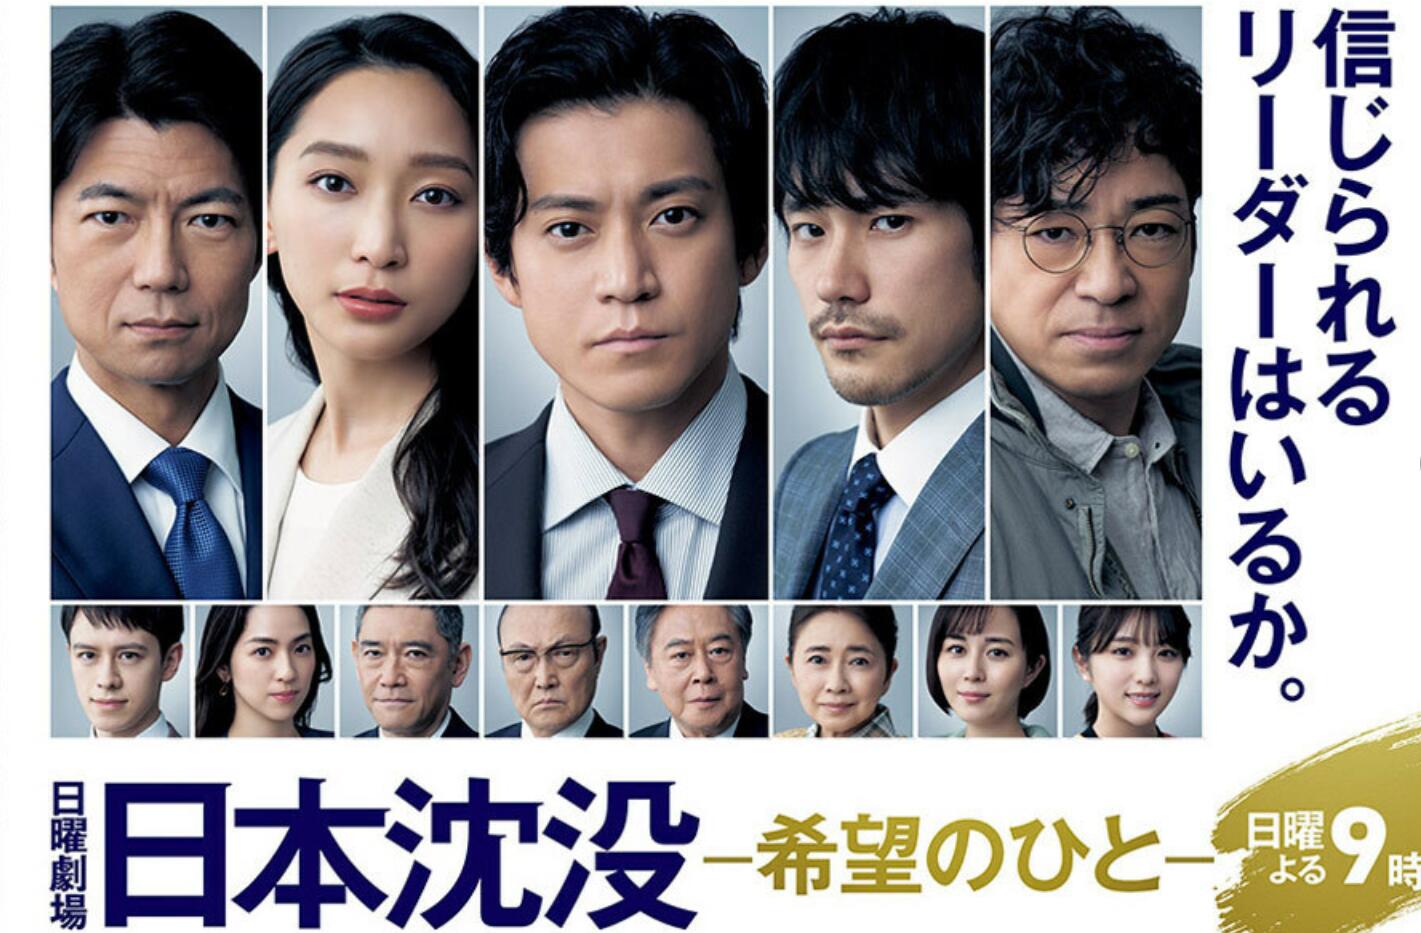 《日本沉没》开局亮眼首集收视率15.8%